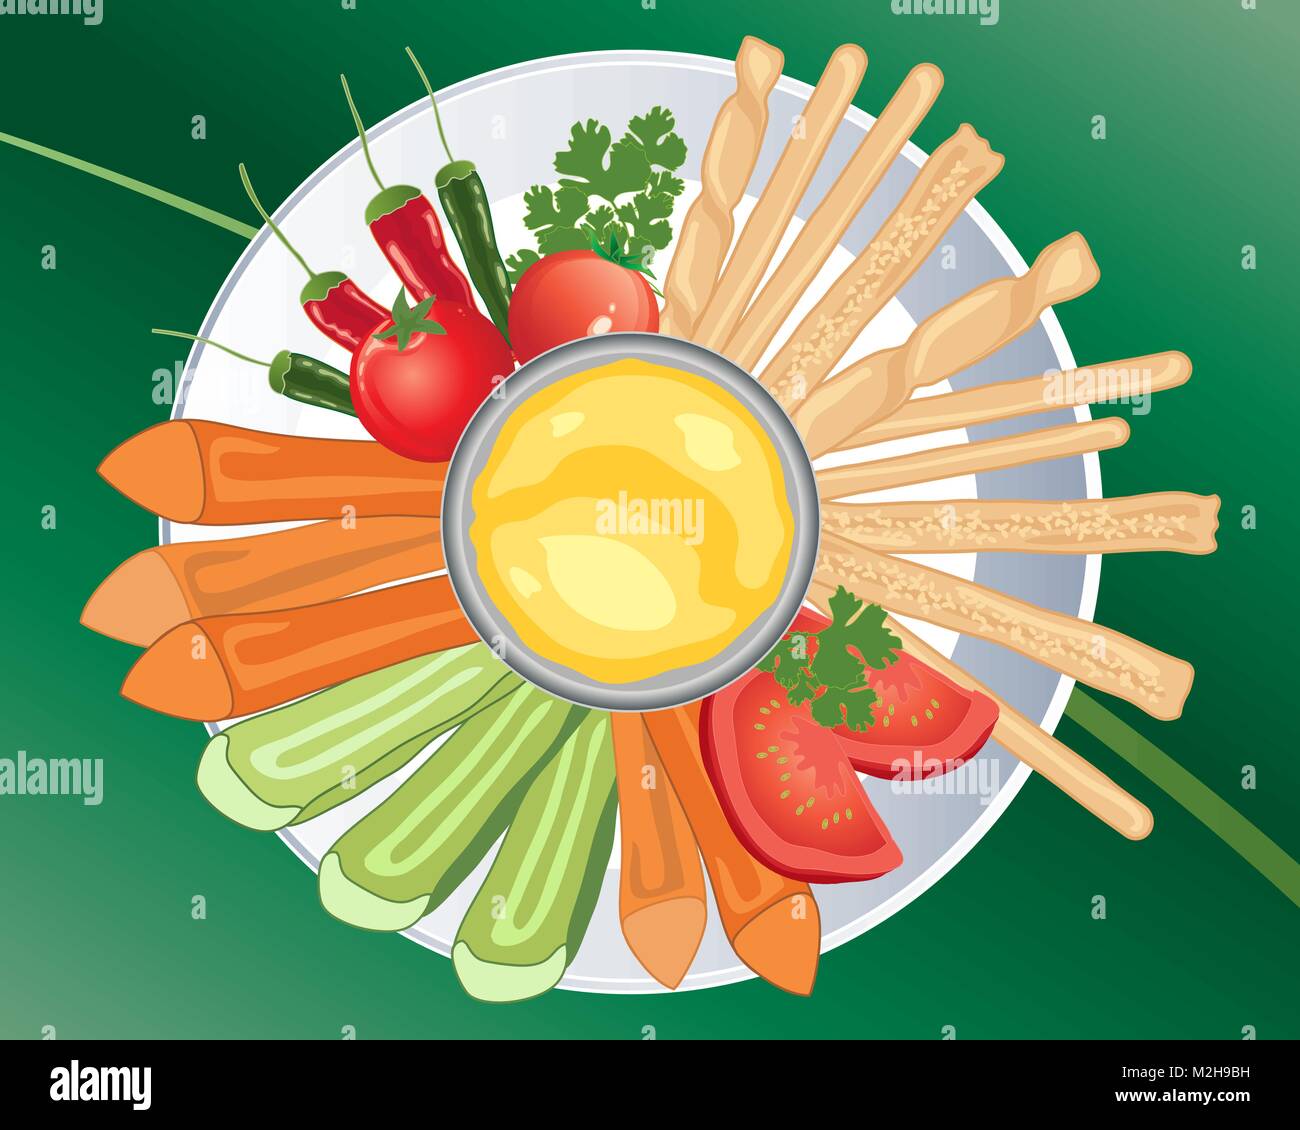 Un vecteur illustration en eps 10 format d'une vue aérienne d'une plaque avec des bâtonnets de légumes tomates piments et bâtonnets de pain Illustration de Vecteur